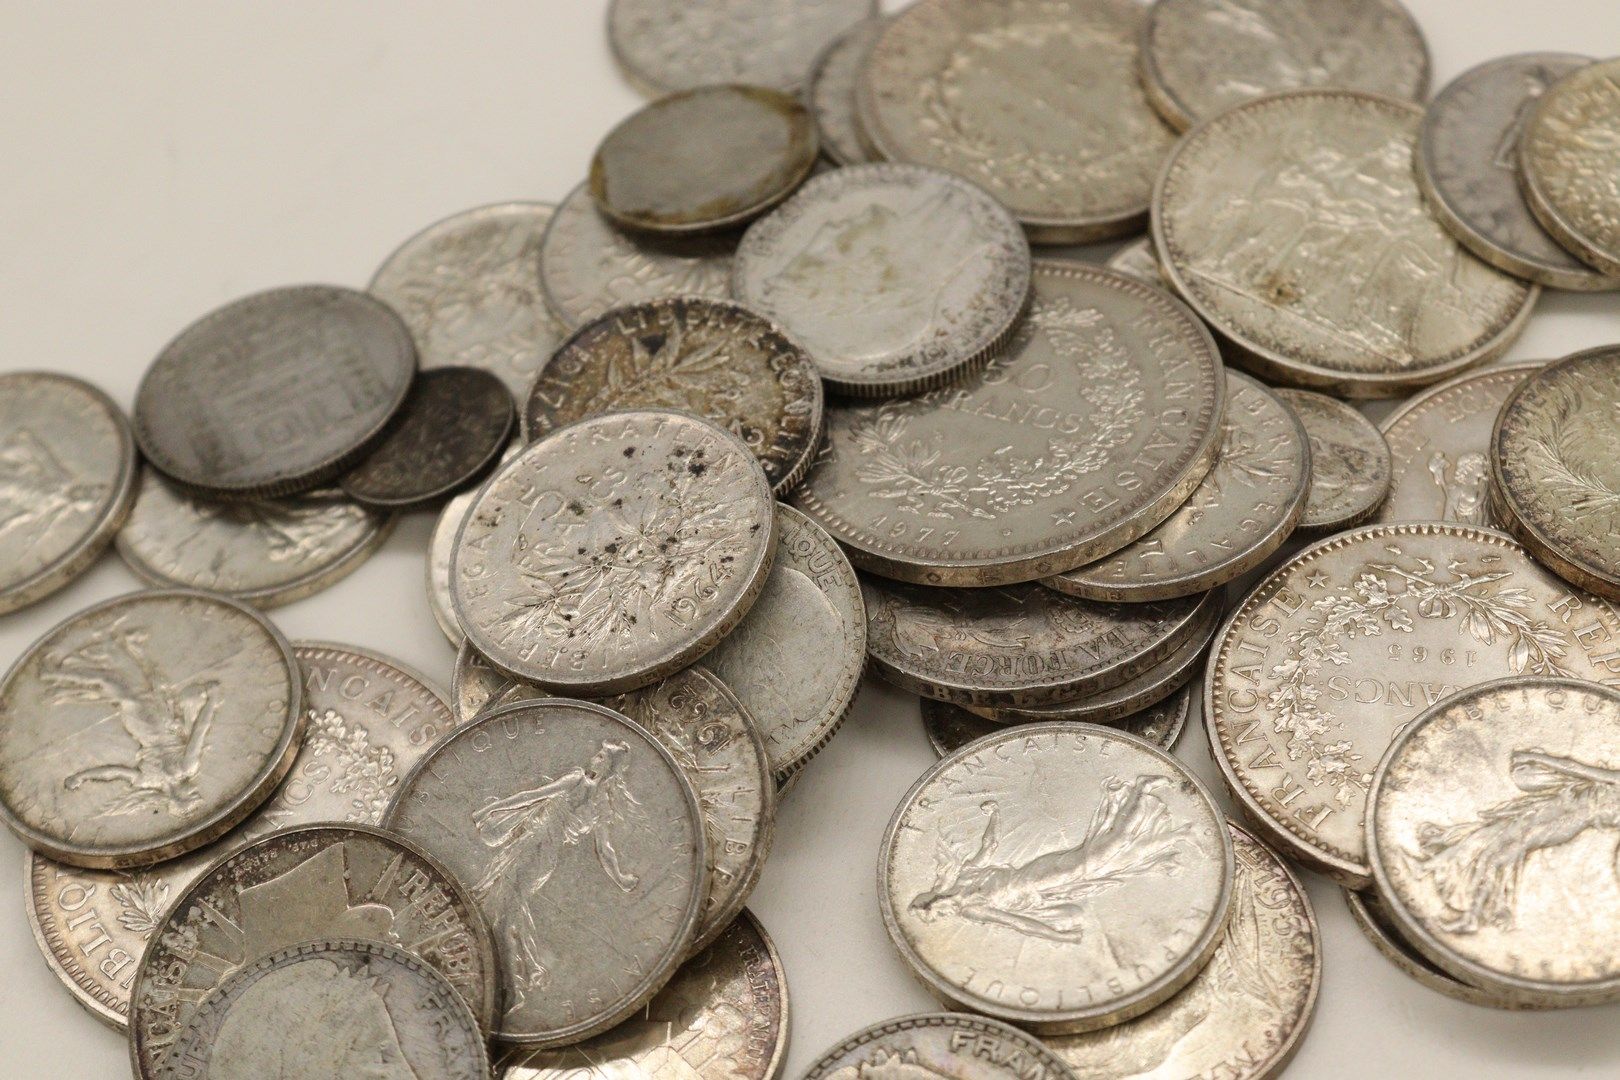 Null 一批法国银币，包括:

- 10法郎

- 20法郎

- 50法郎 

- 100法郎

重量：660克。